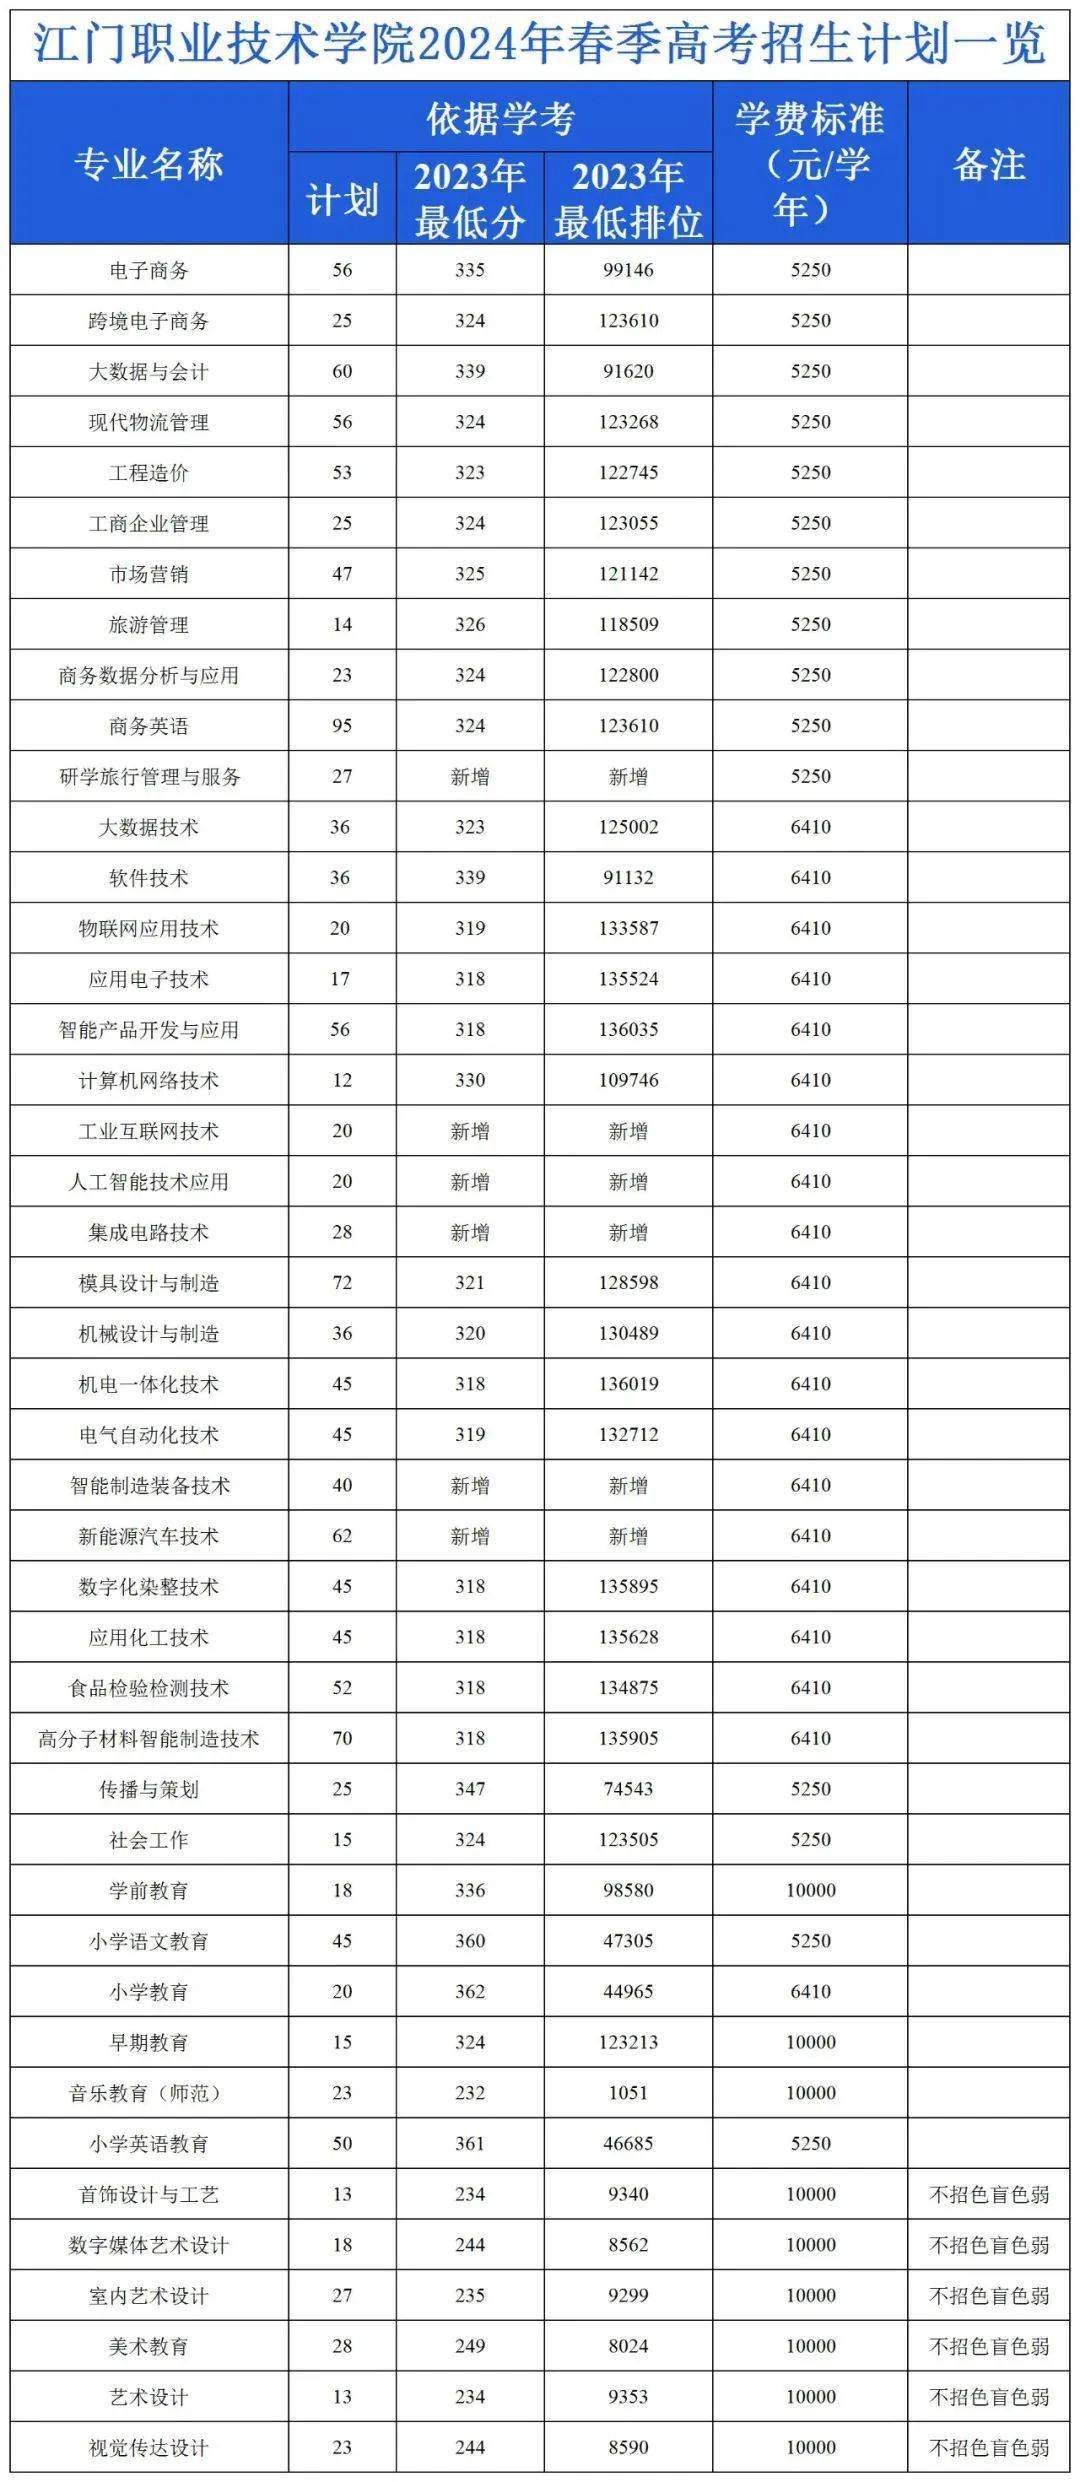 3 证书普通类招生计划2576个,3 证书西藏新疆班招生计划50个,高职自主